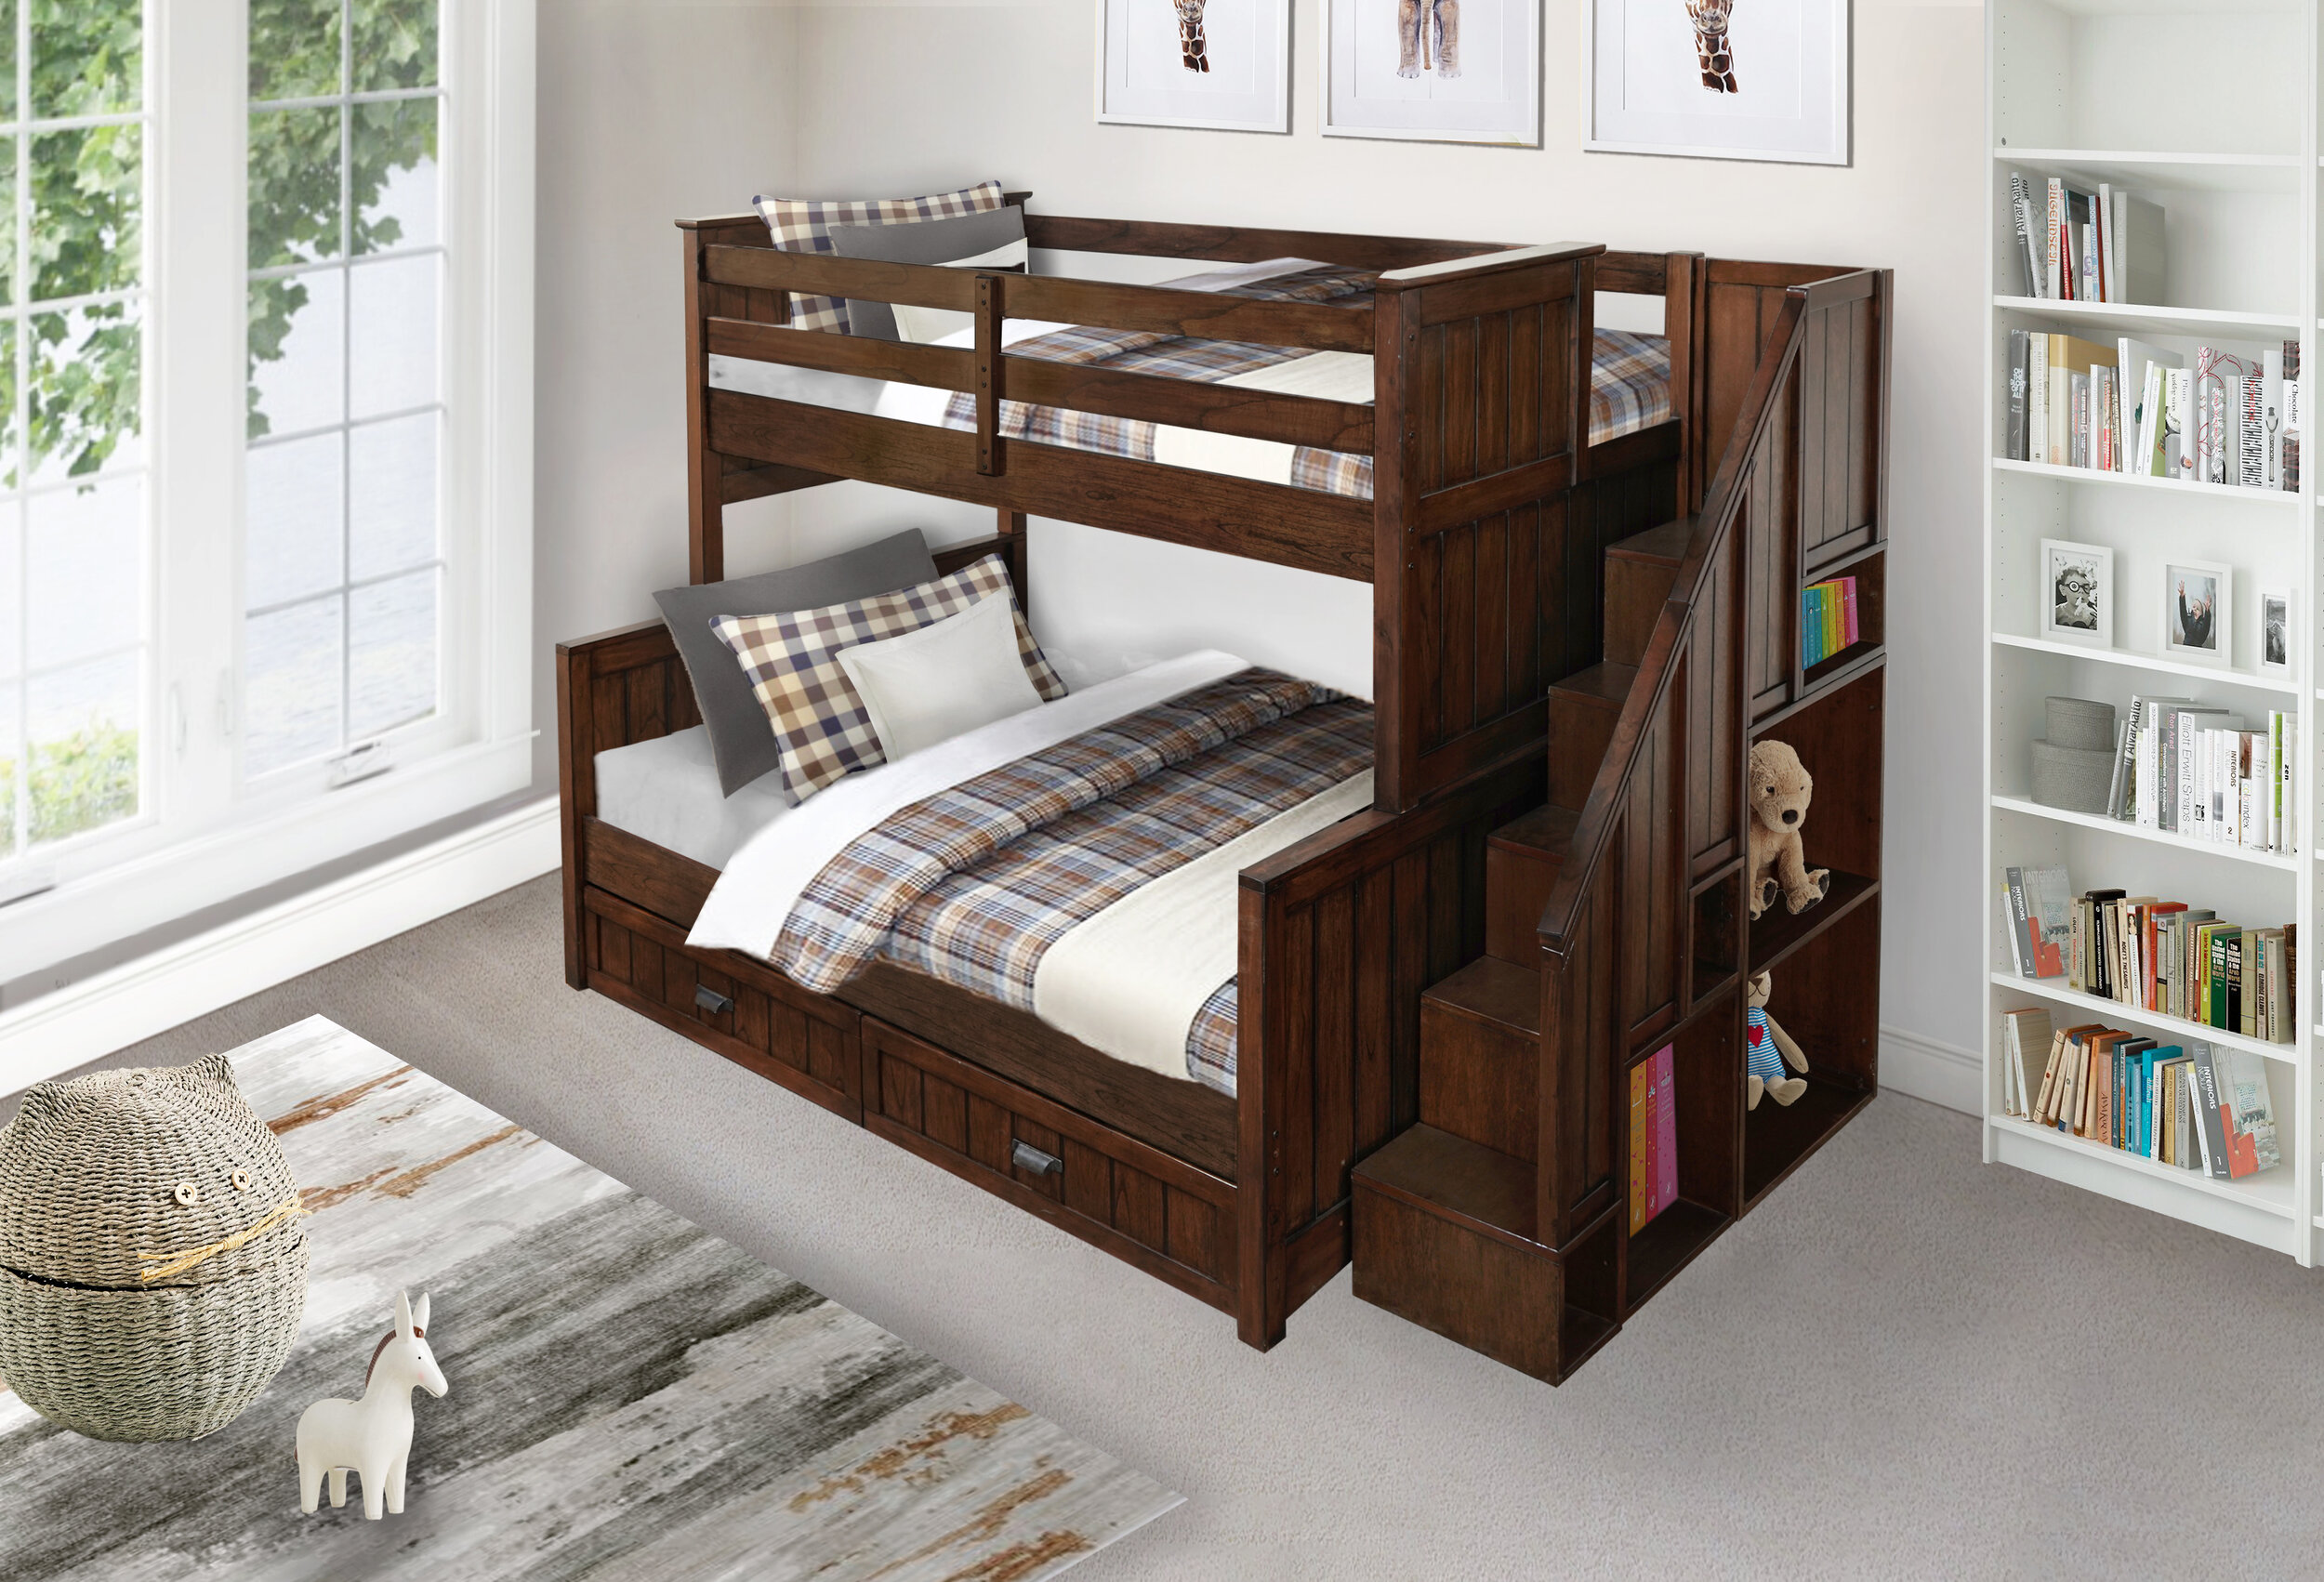 Caramia Furniture Bunk Beds, Bunk Bed With Bookshelf